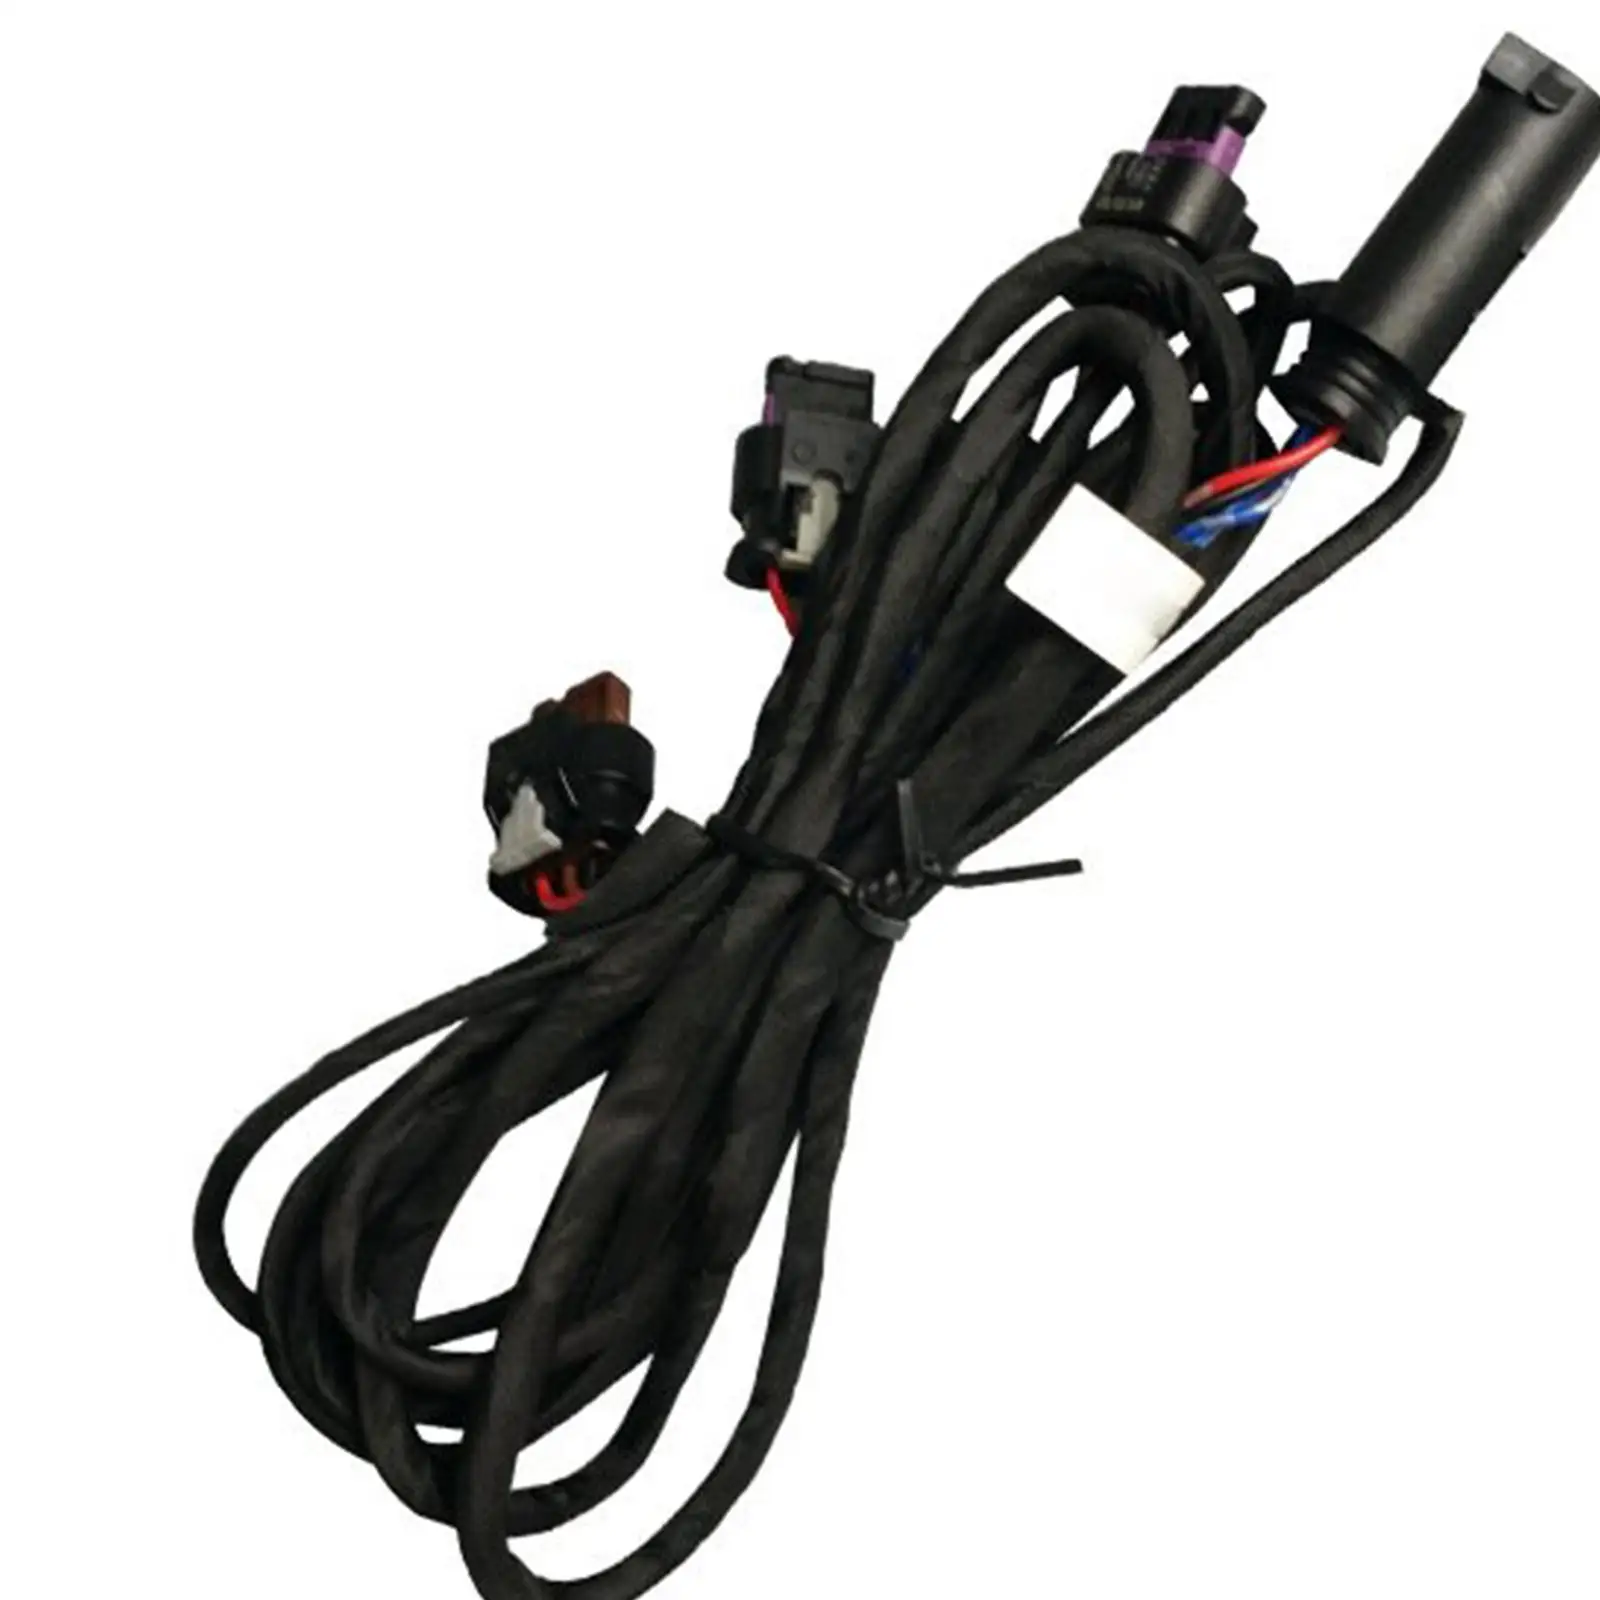 Parking Sensor Loom Wiring Harness Car Accessories Replaces for BMW 3 Series 4 Series F82 M4 F82 M4 Lci F34 GT Lci F33 Lci